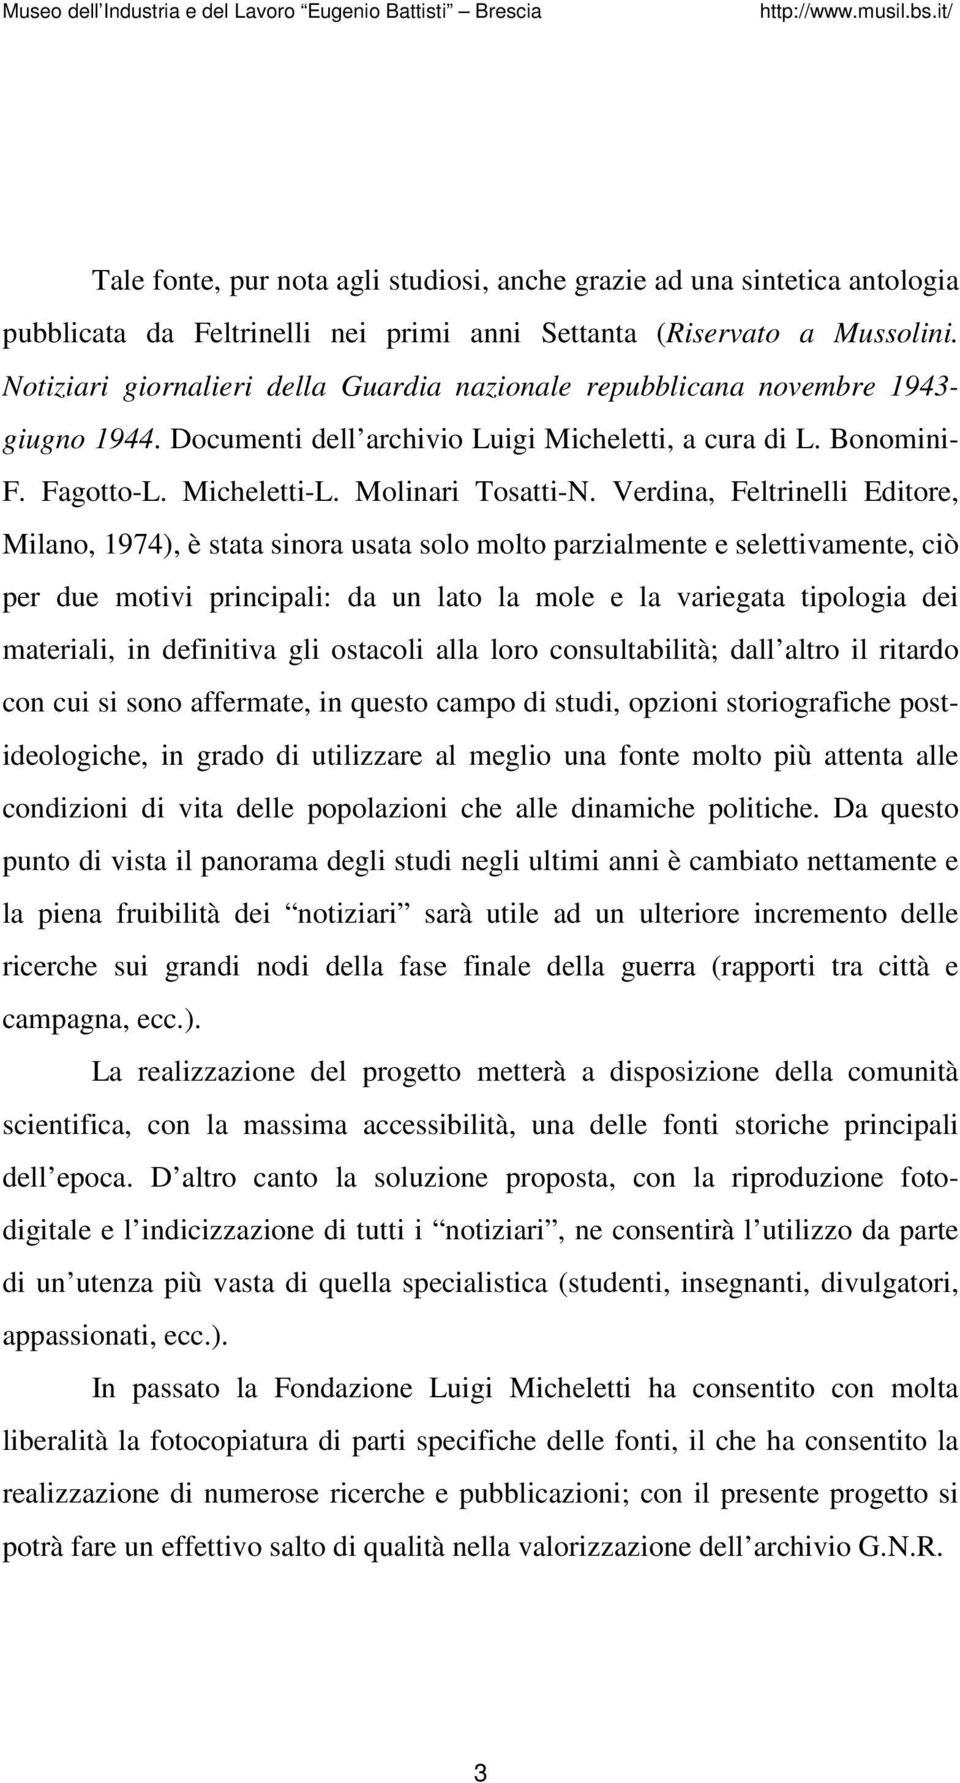 Verdina, Feltrinelli Editore, Milano, 1974), è stata sinora usata solo molto parzialmente e selettivamente, ciò per due motivi principali: da un lato la mole e la variegata tipologia dei materiali,